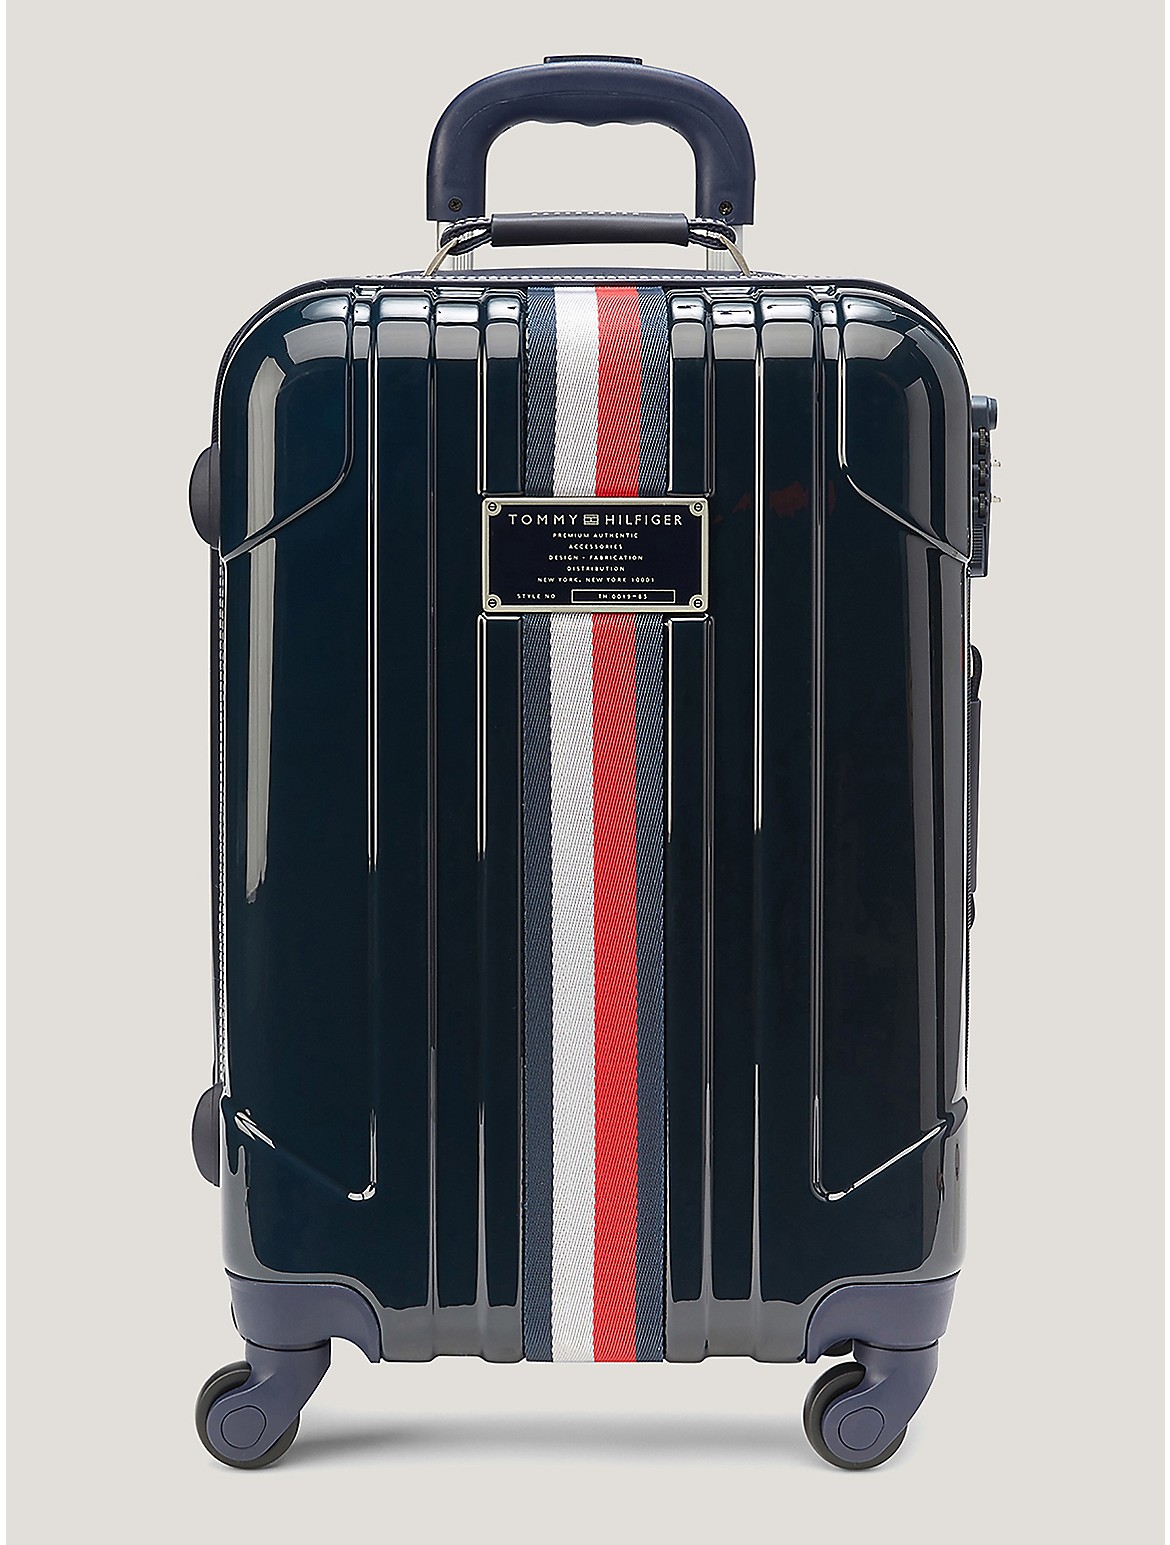 Tommy Hilfiger 21 Hardcase Spinner Suitcase